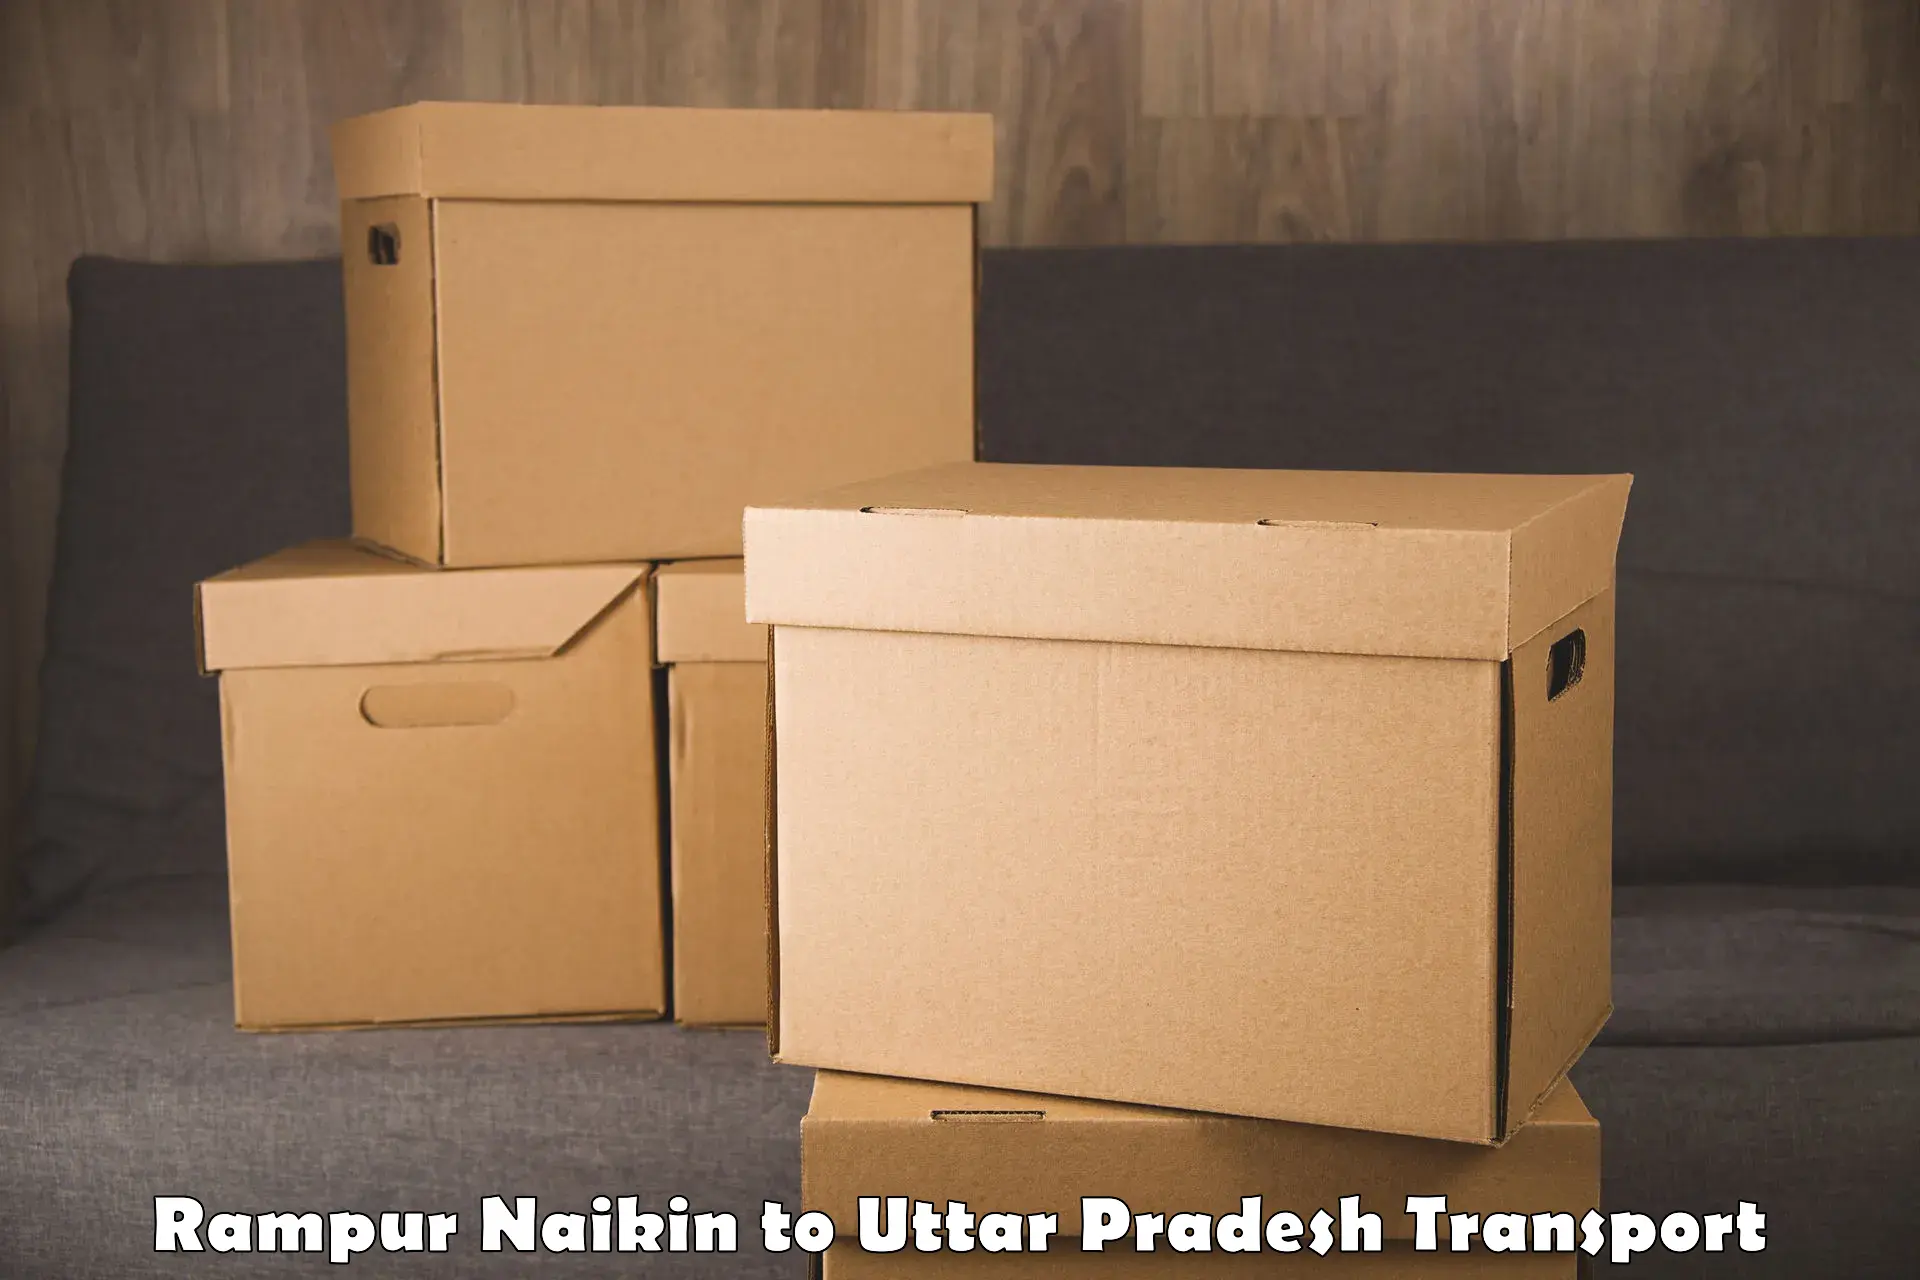 Pick up transport service Rampur Naikin to Ballia